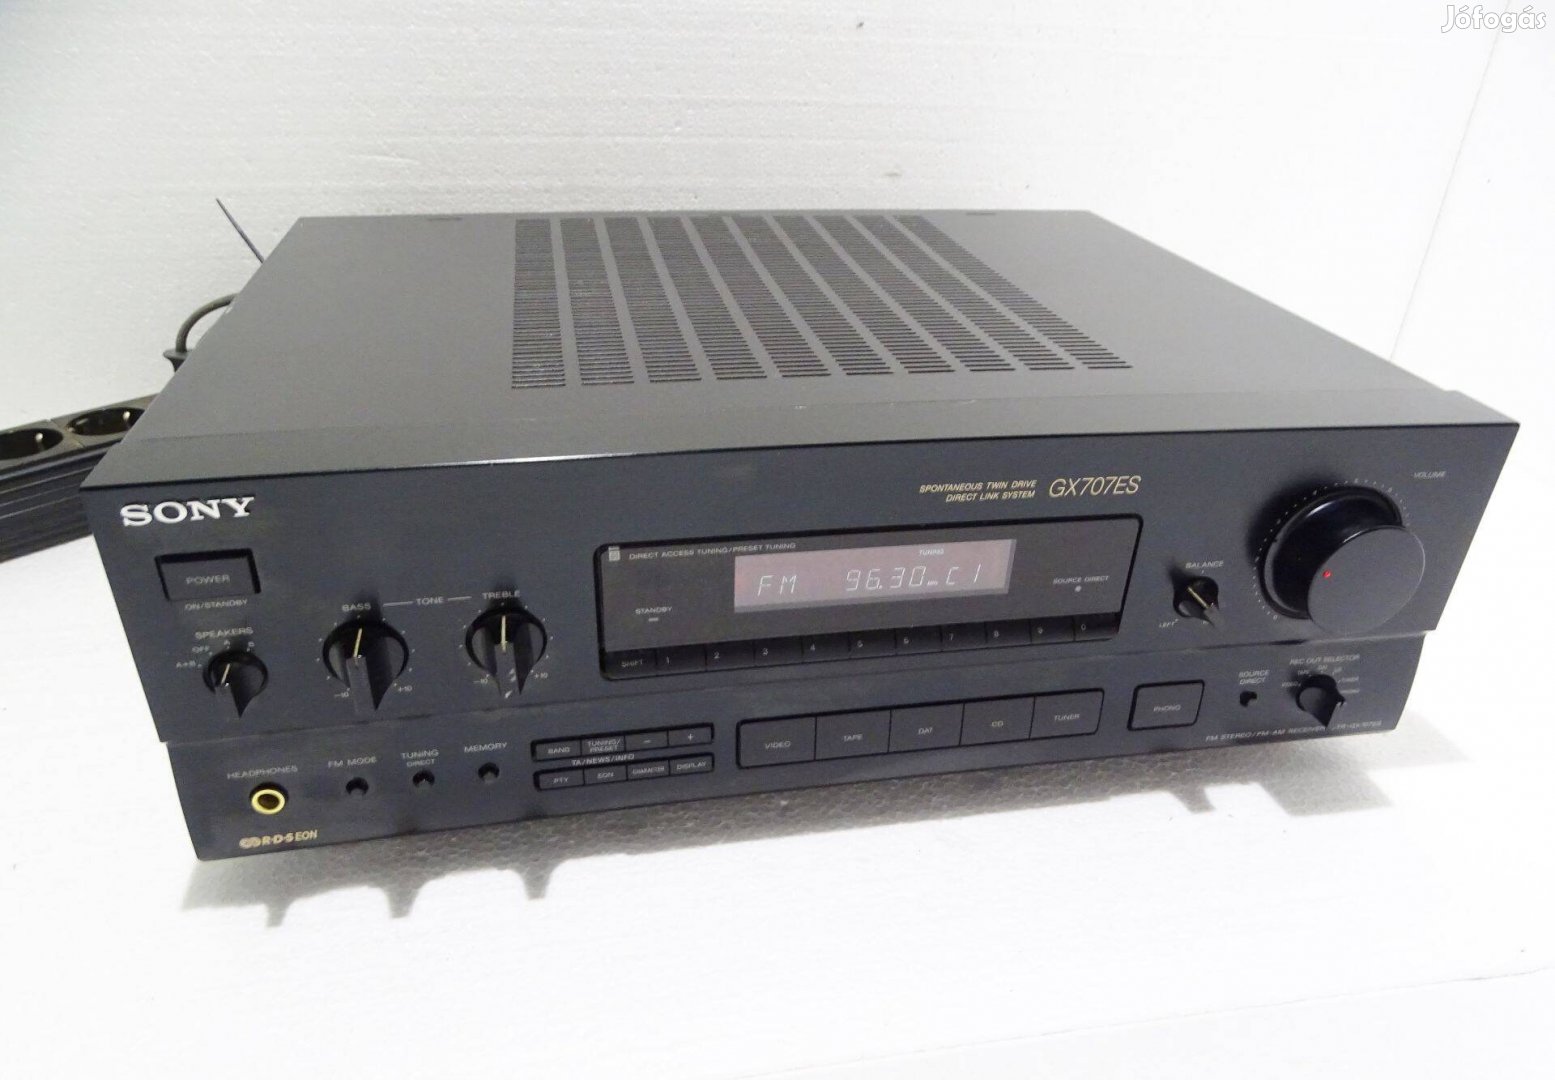 Sony STR-Gx707Es rádióerősítő sztereó erősítő AM / FM erősítő